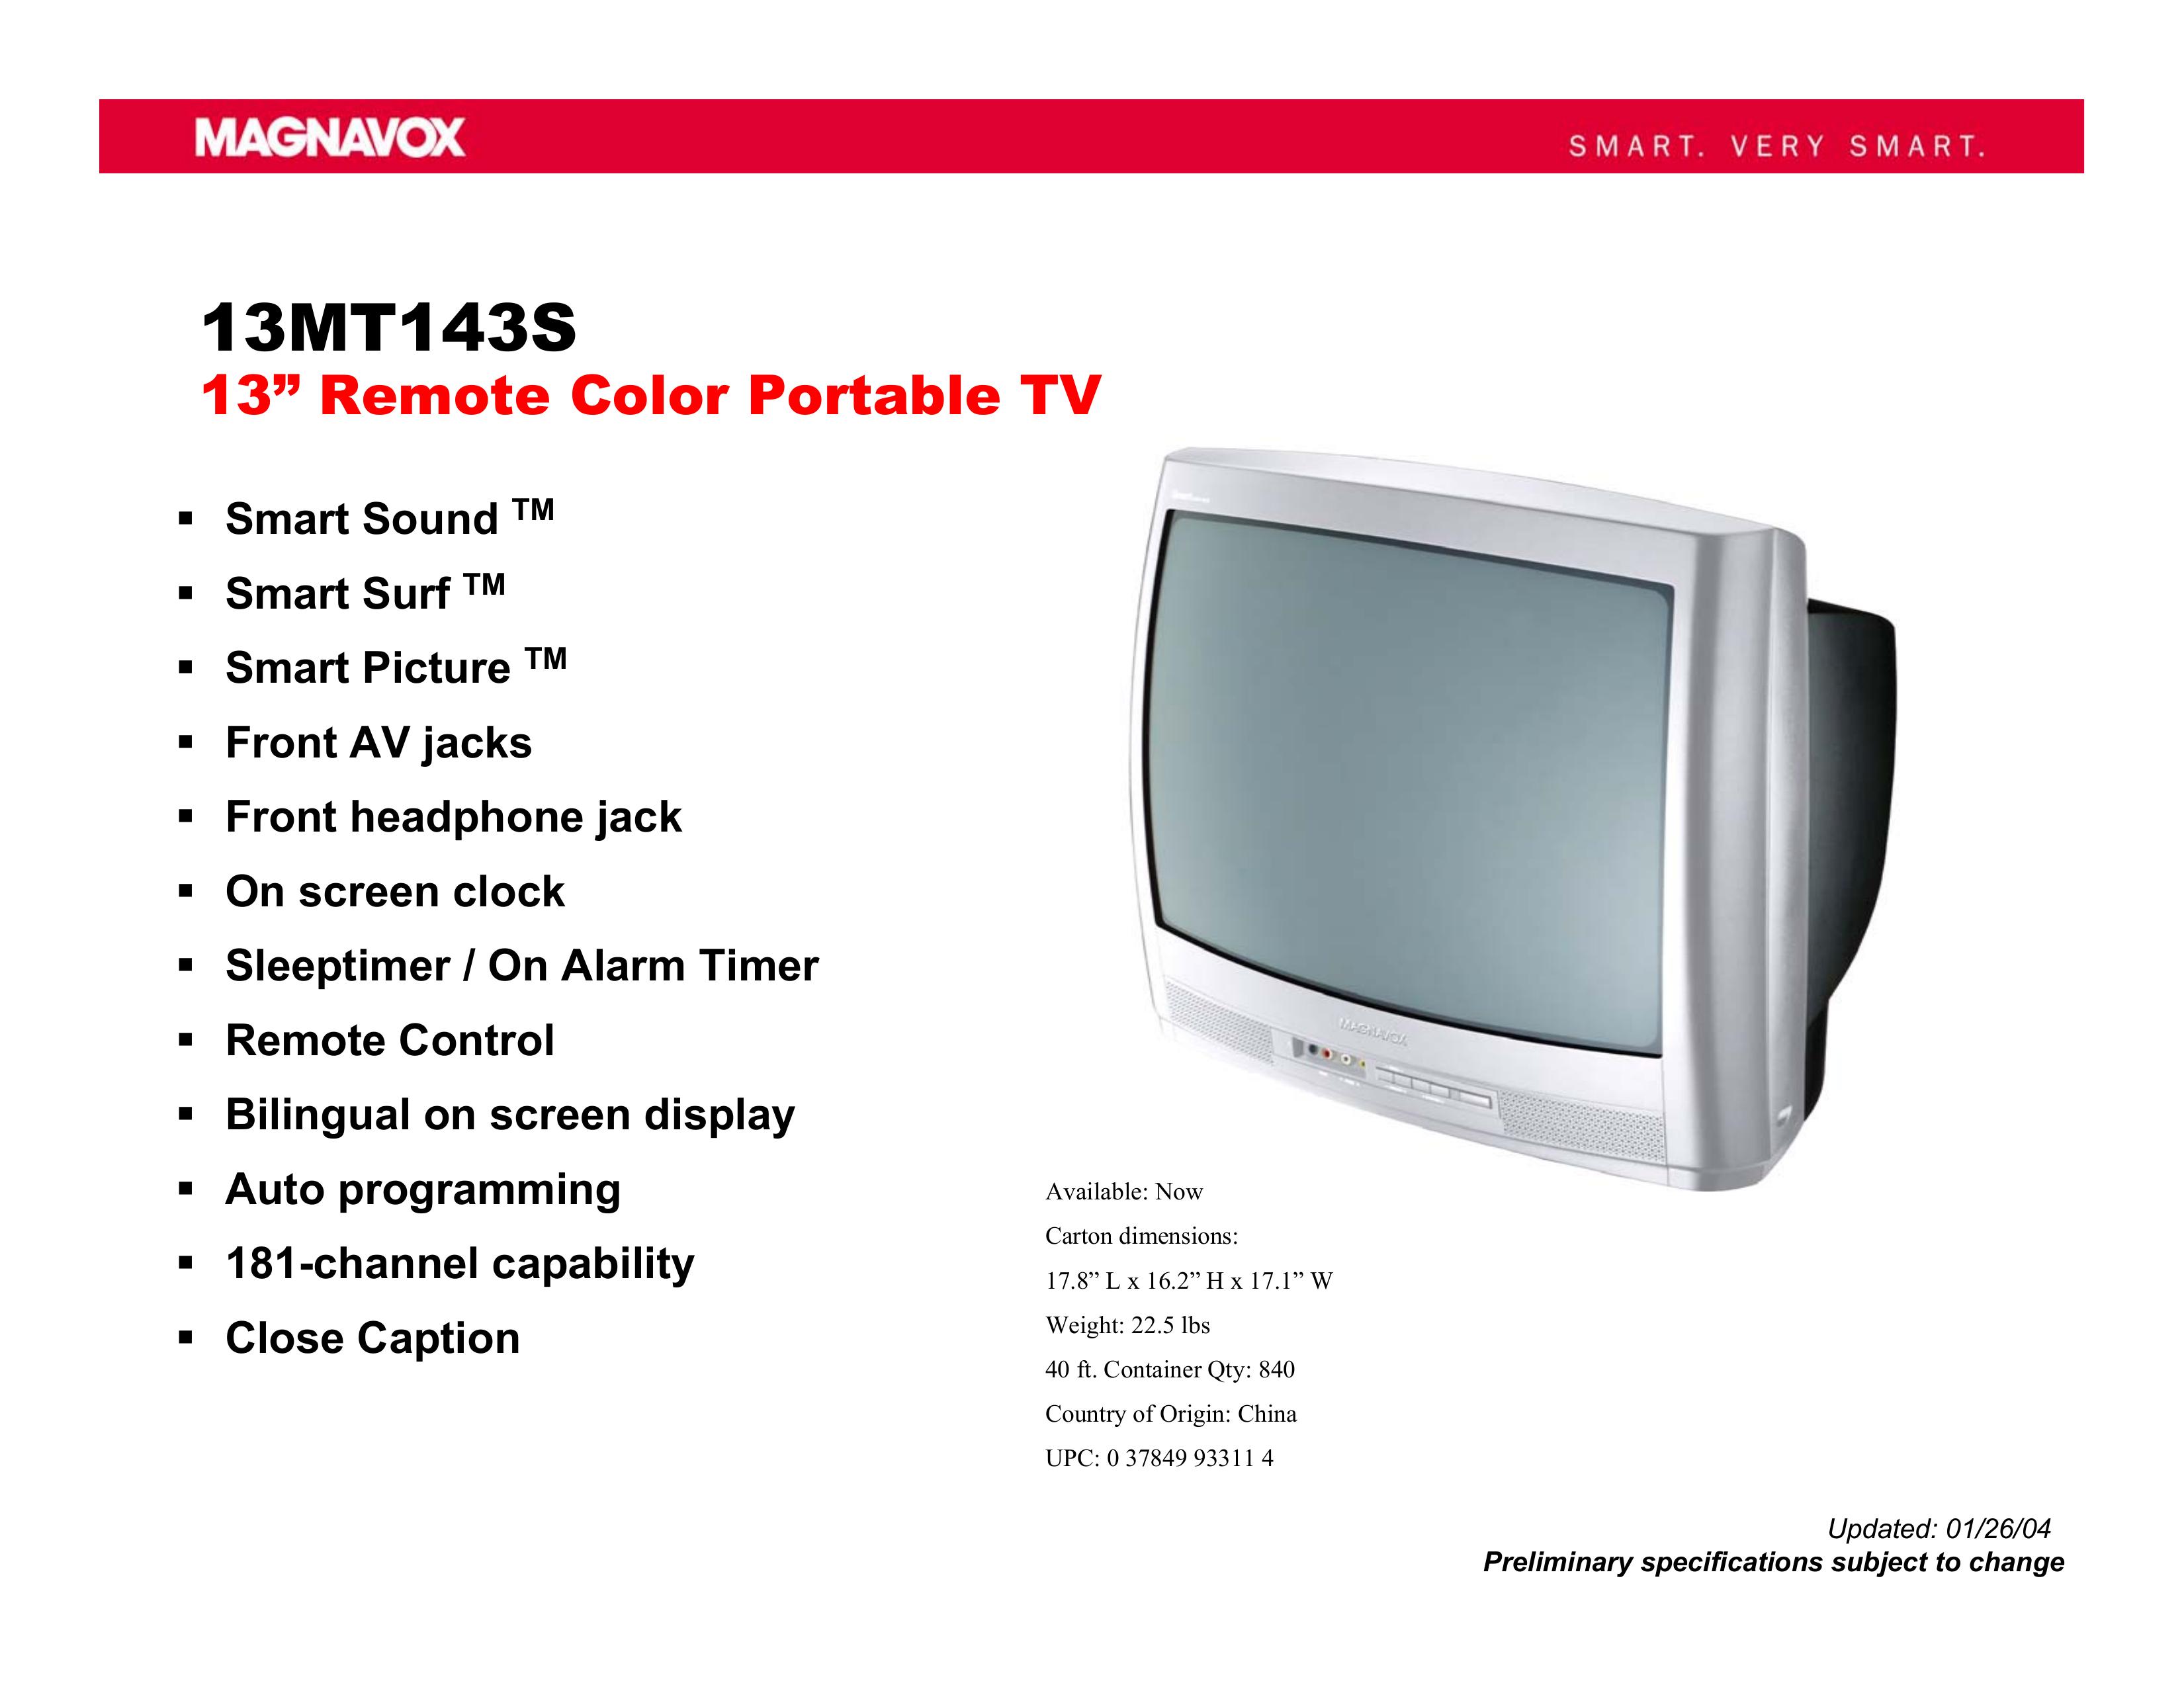 Magnavox 13MT143S Handheld TV User Manual